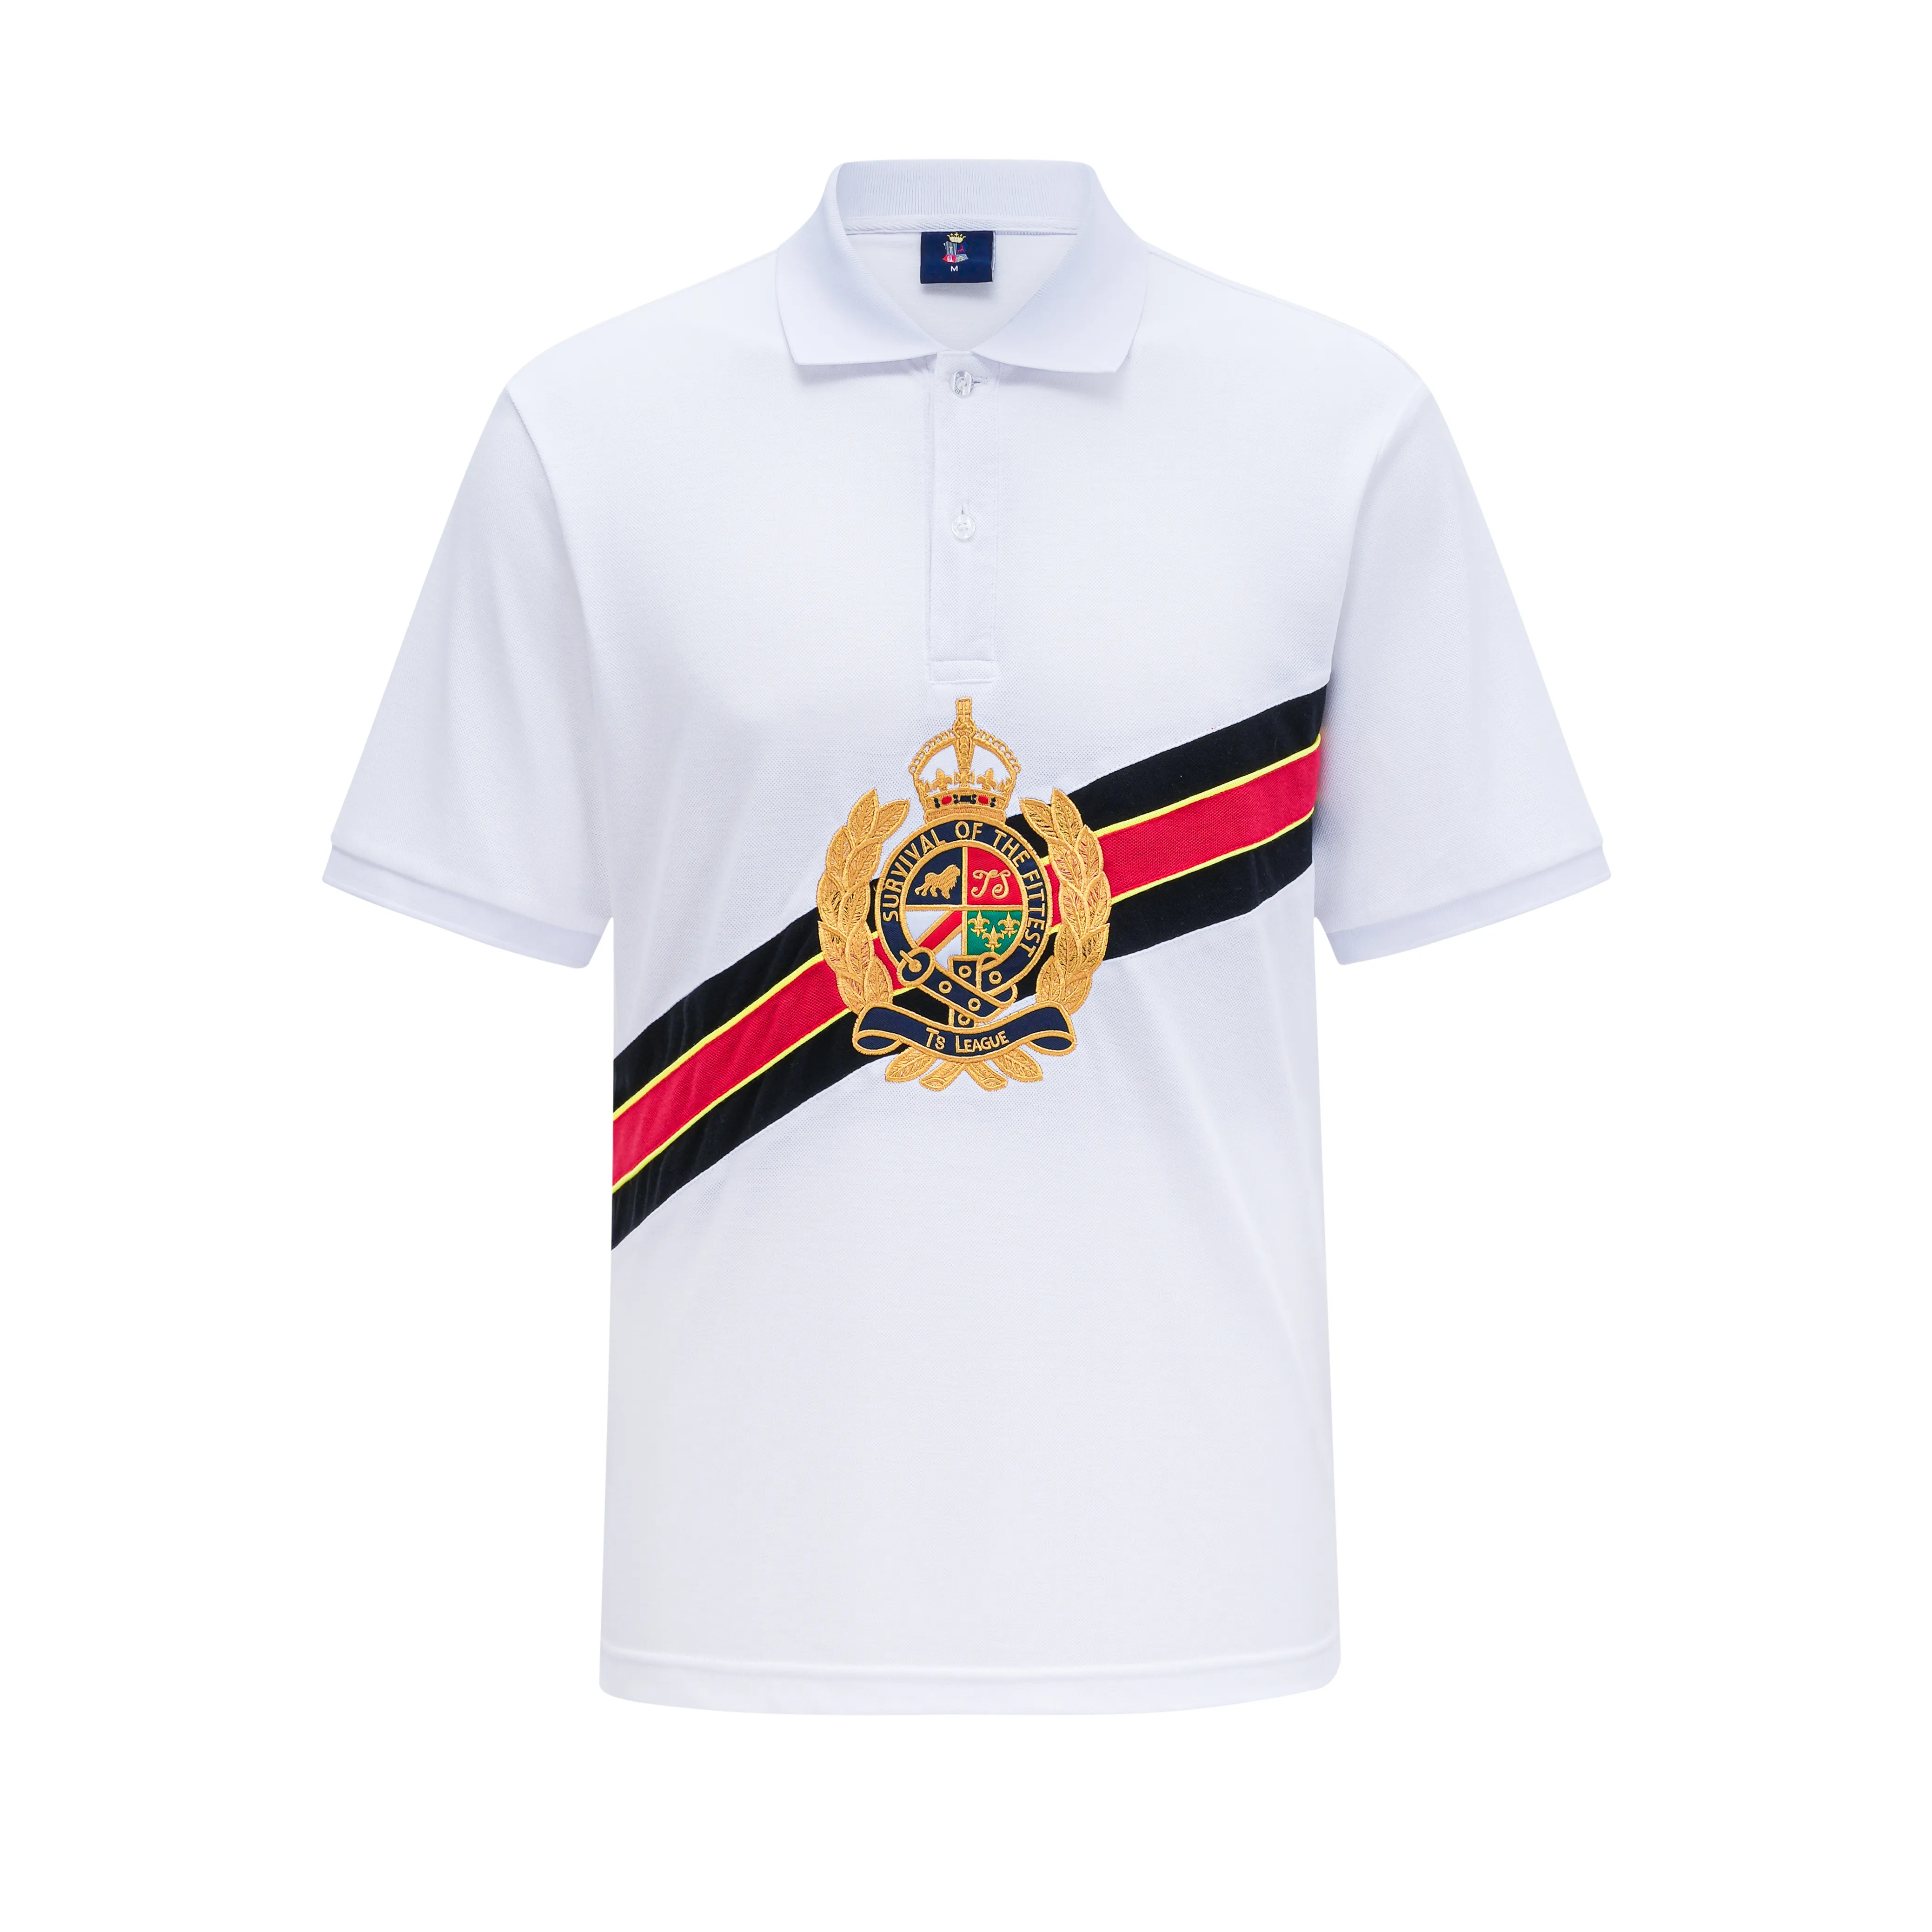 Nowy letni wybór mężczyzn: Pure Cotton Town-Down Cllar Polo Shirt, Modny wzór haftu pokazuje indywidualny styl